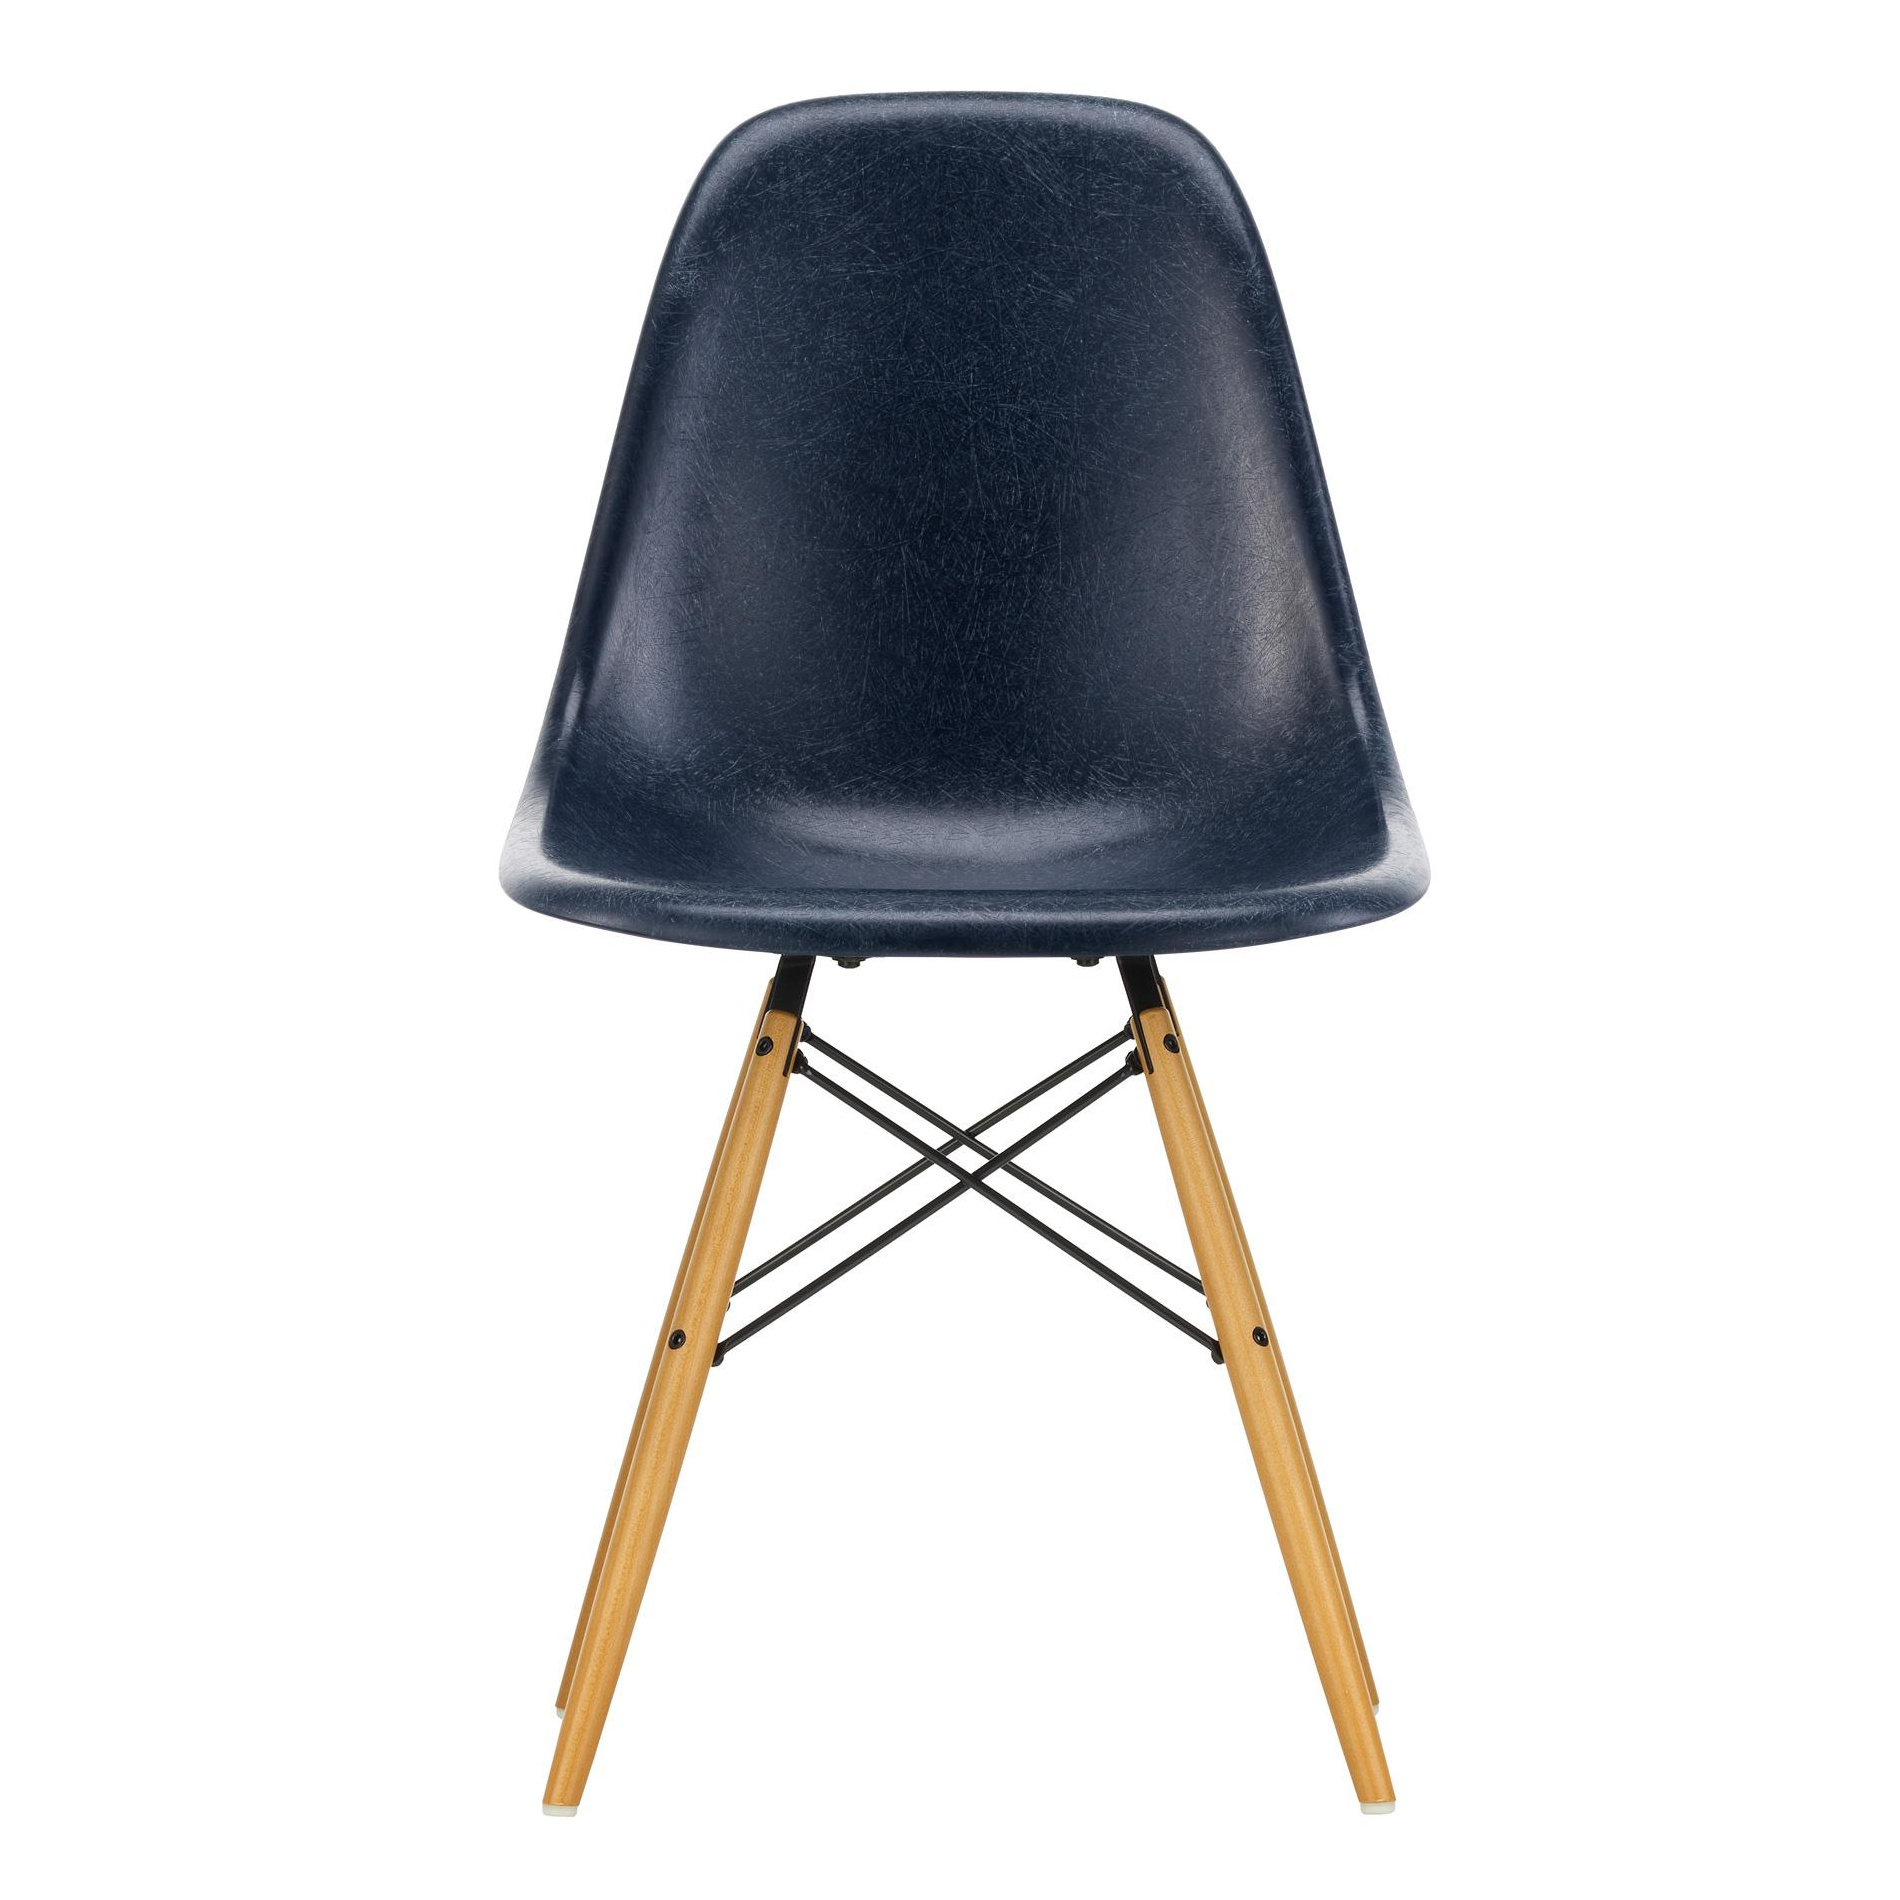 Vitra - Eames Fiberglass Side Chair DSW Ahorn gelblich - marineblau/Sitzschale Fiberglas/Gestell Ahorn gelblich/Stahl schwarz/BxHxT 46,5x83x55cm von Vitra